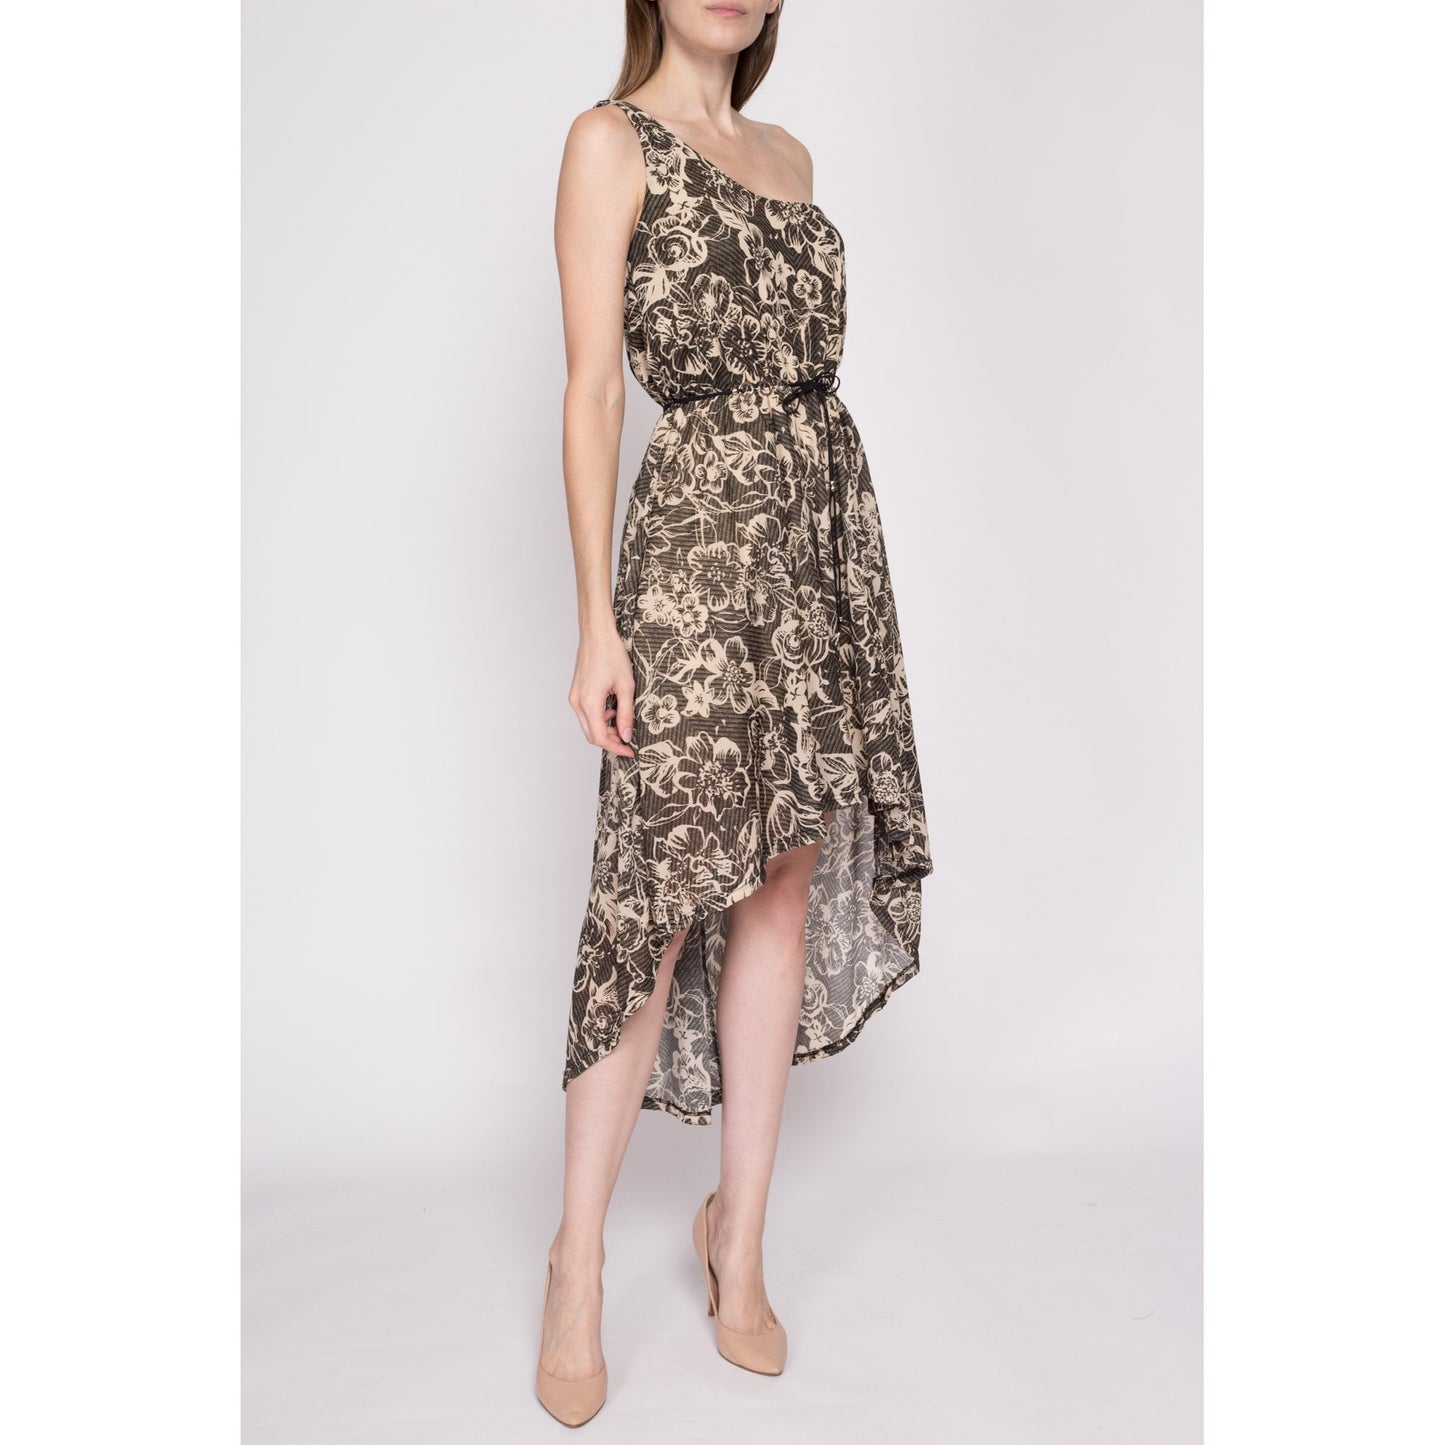 S| Y2K Floral One Shoulder High-Low Dress - Small | Boho Vintage Asymmetrical Belted Summer Sundress